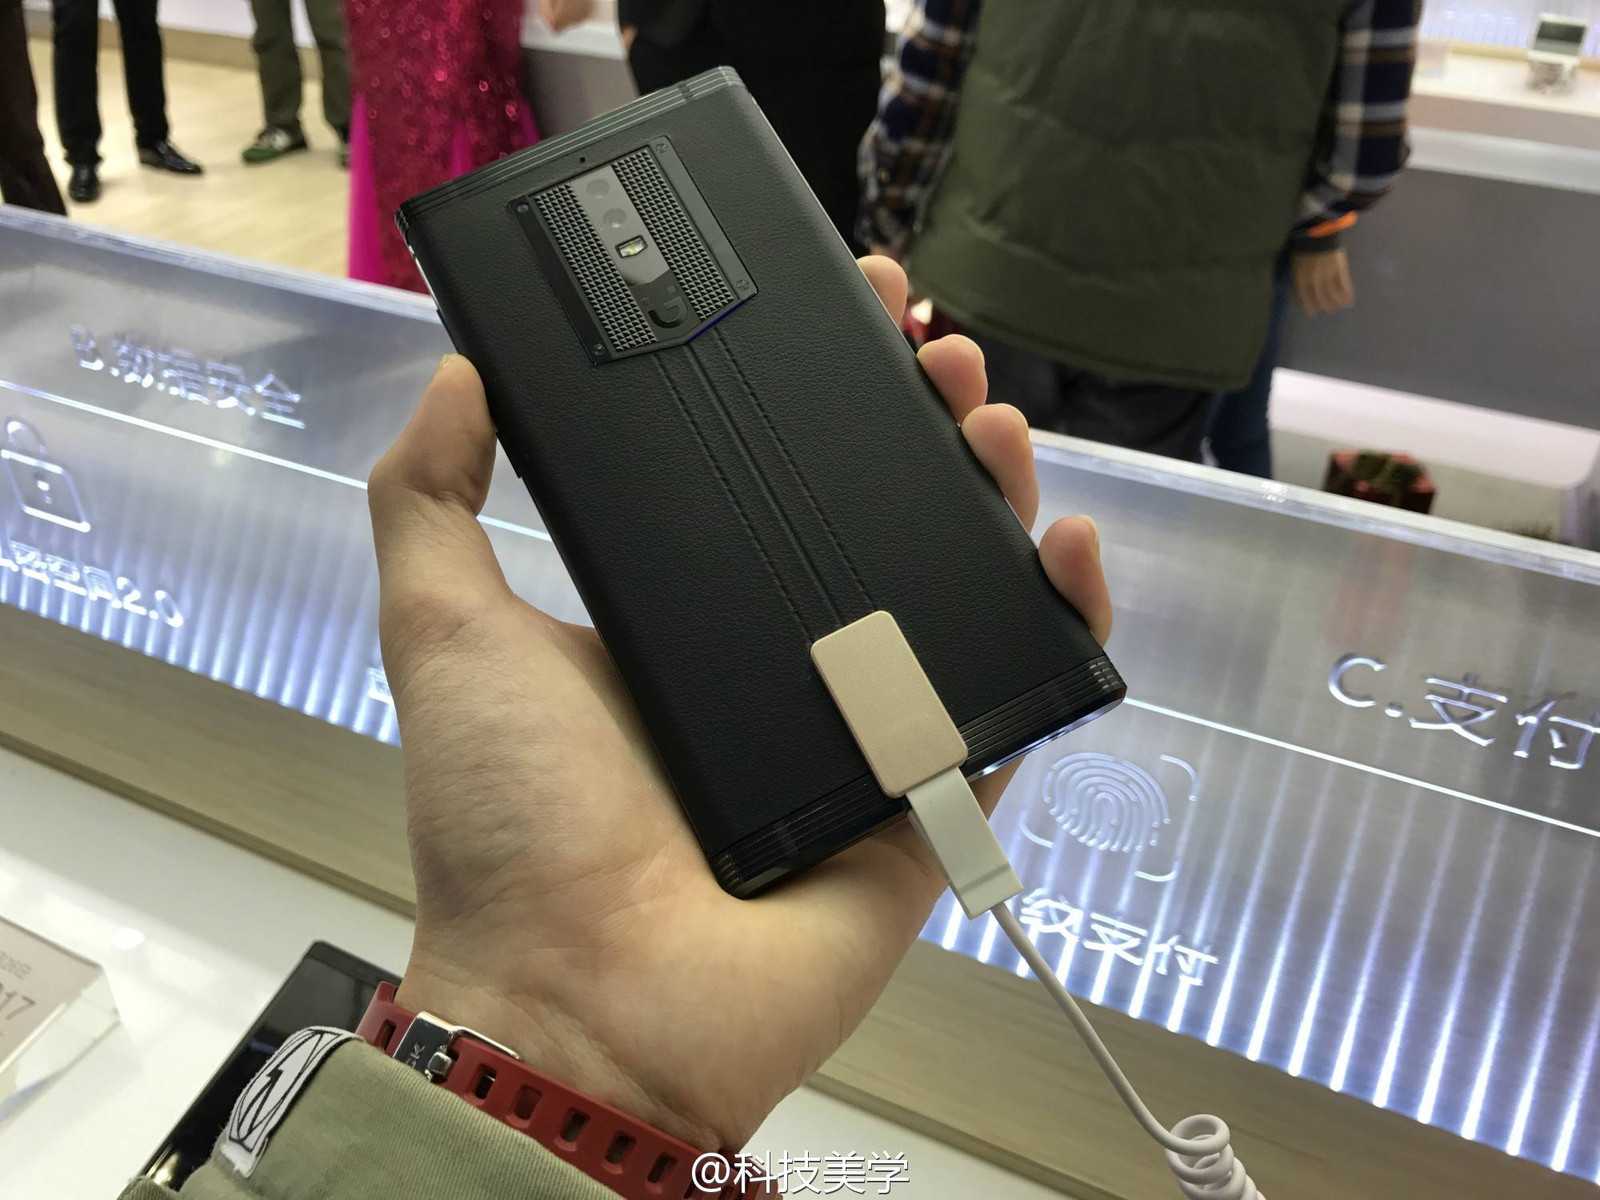 Htc выпустила сверхдешевый смартфон с гигантским аккумулятором. видео - cnews